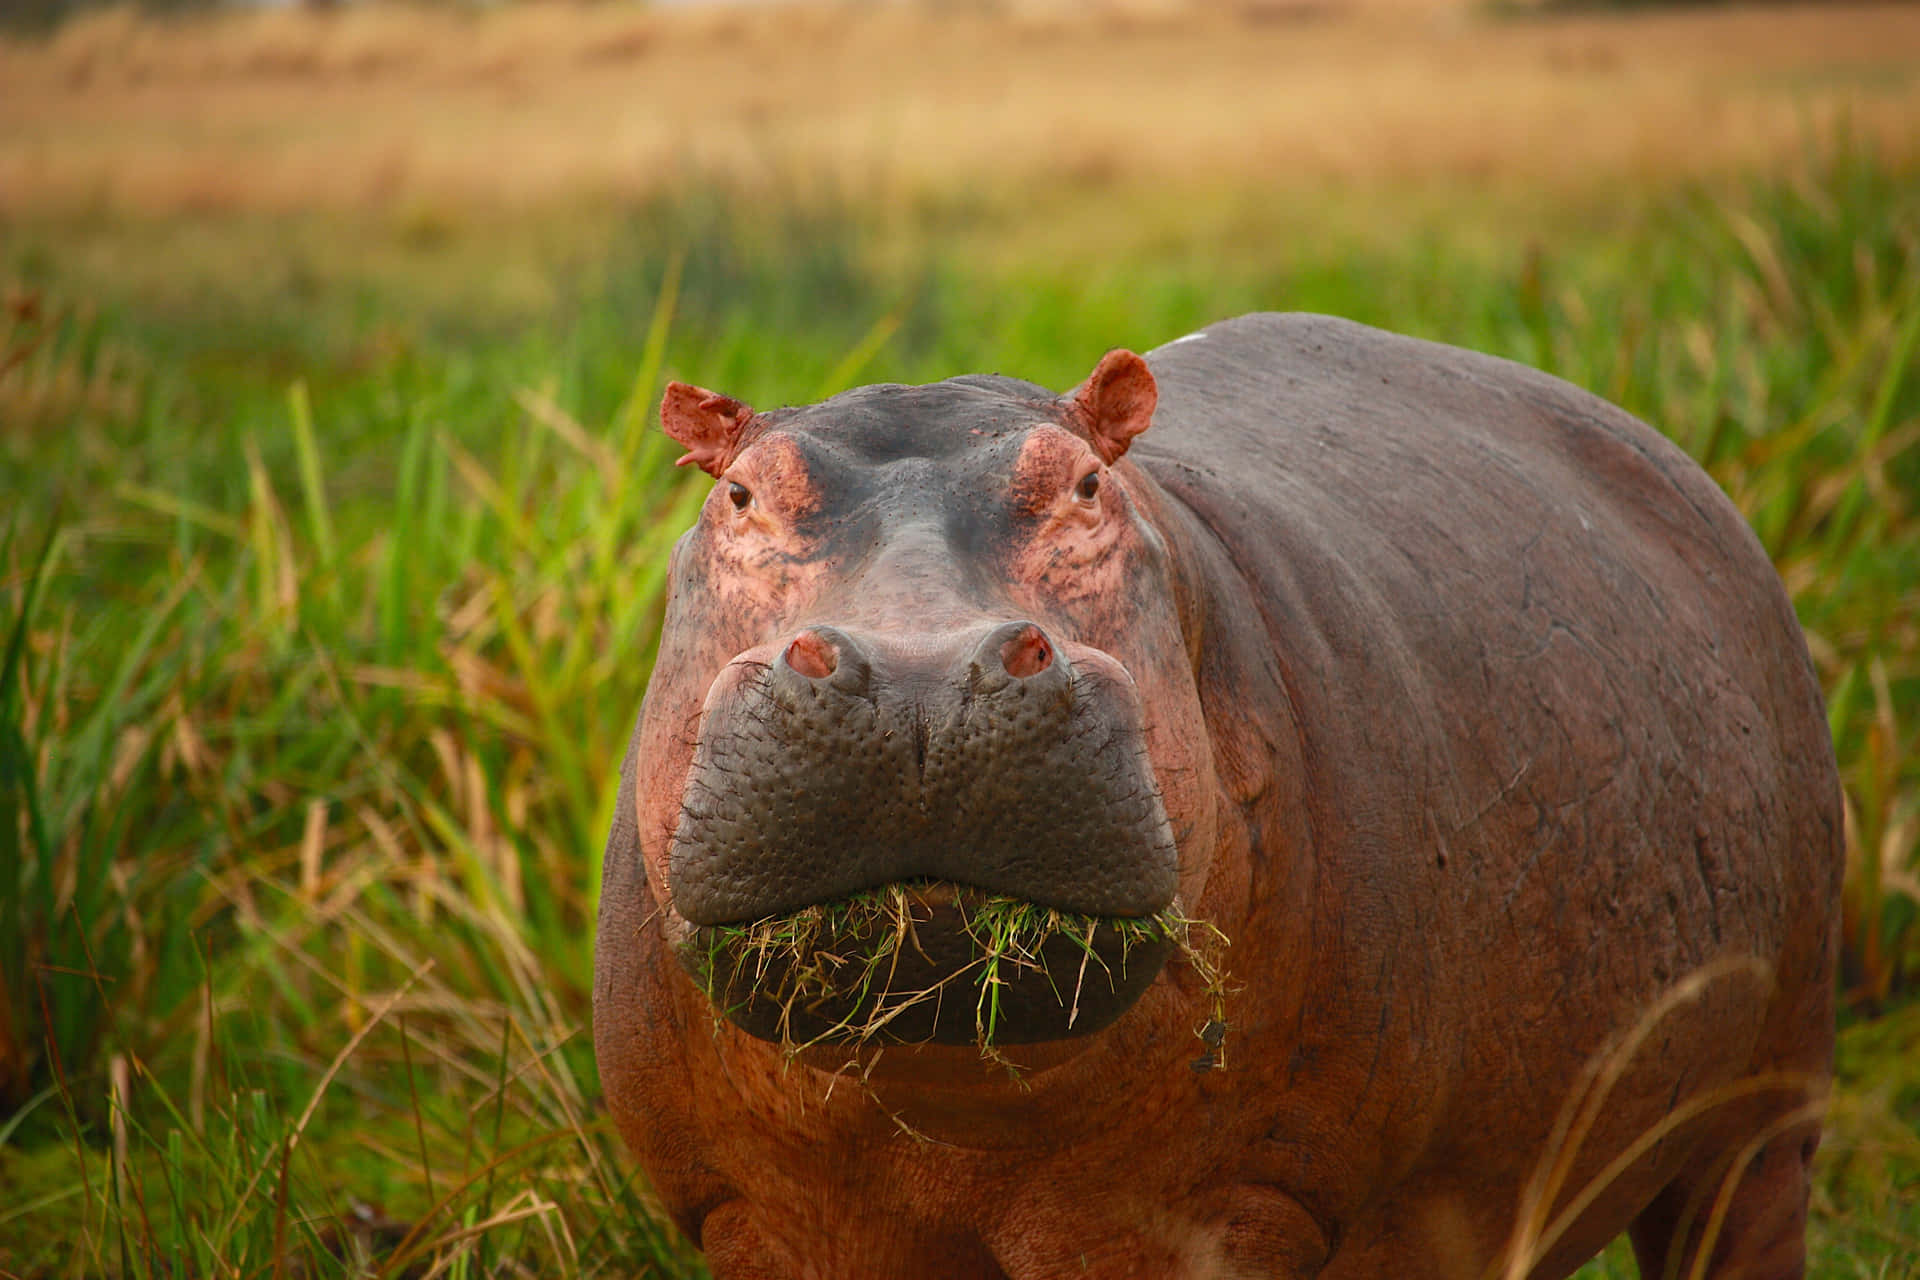 Imagende Naturaleza Mostrando Un Hipopótamo Comiendo Hierba.